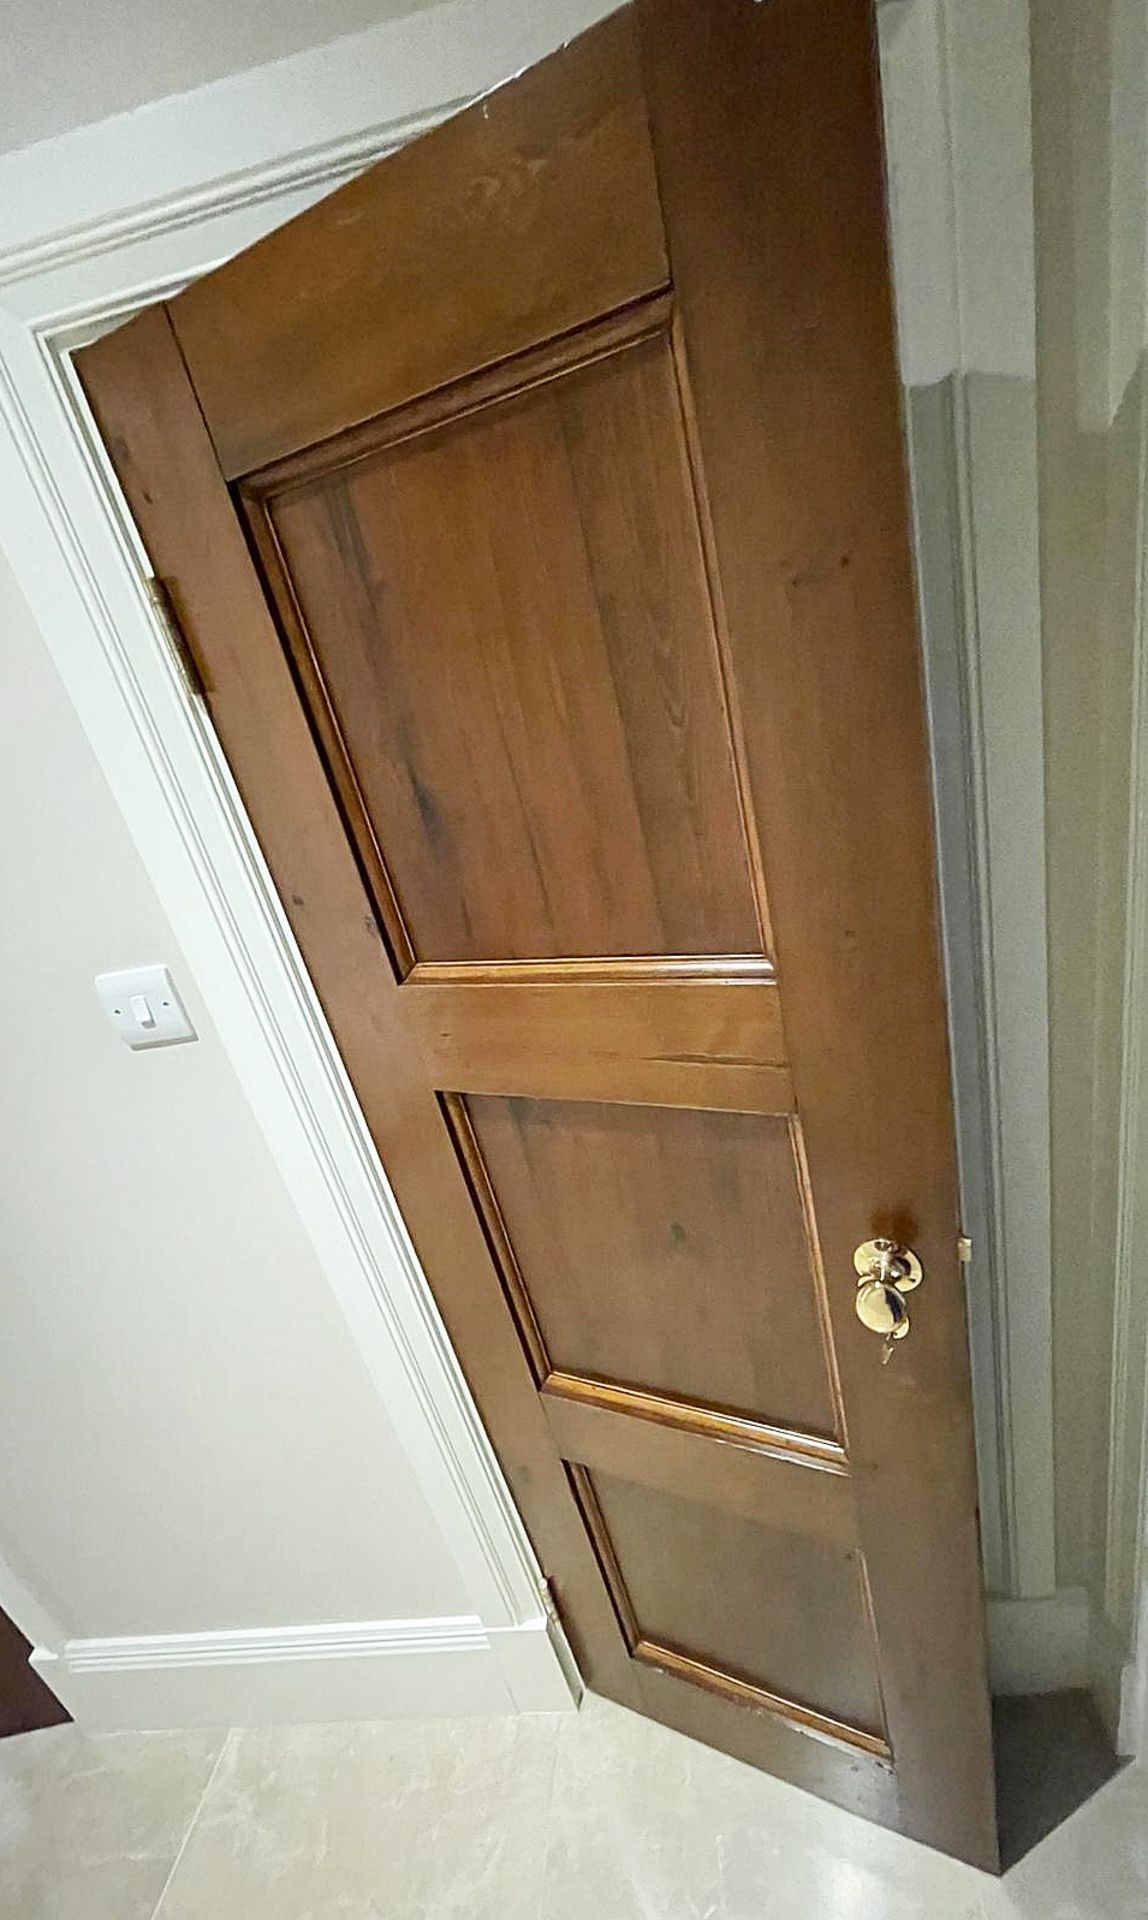 1 x Solid Wood Slim Lockable Internal Door - Ref: PAN129 / UNDSTRS - CL896 - NO VAT ON THE - Image 2 of 5